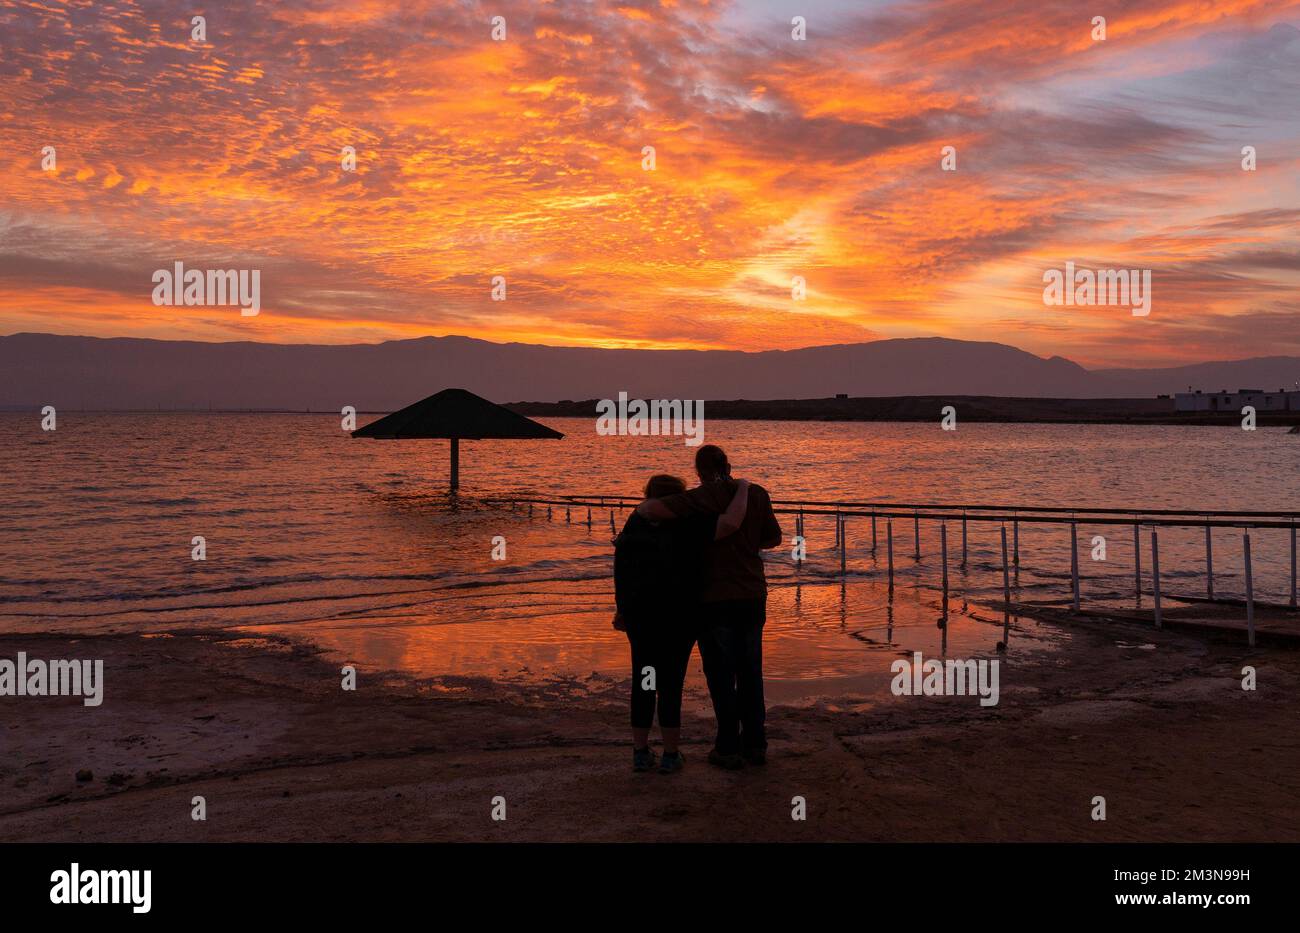 Scenic sunrise at the Dead Sea Stock Photo